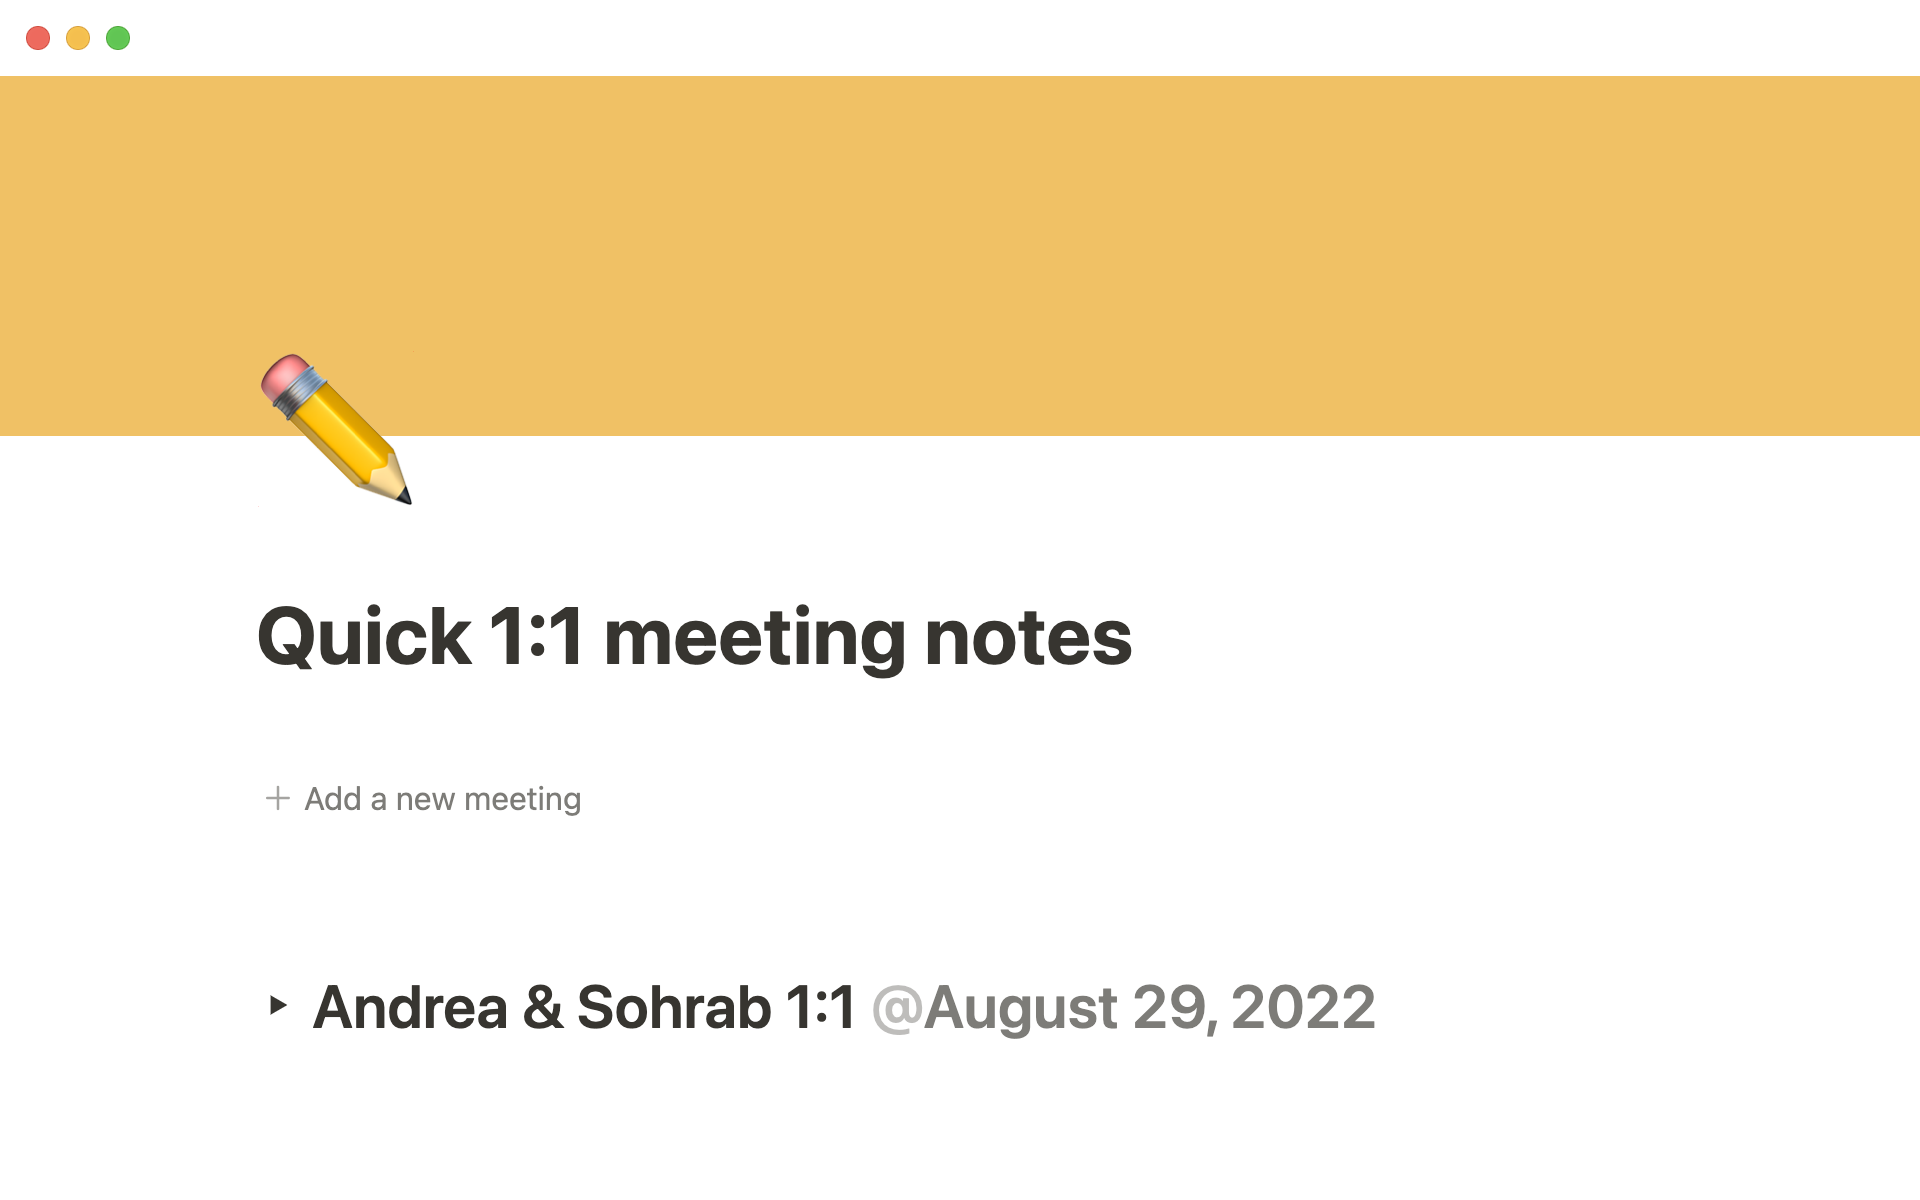 Vista previa de plantilla para Quick 1:1 meeting notes